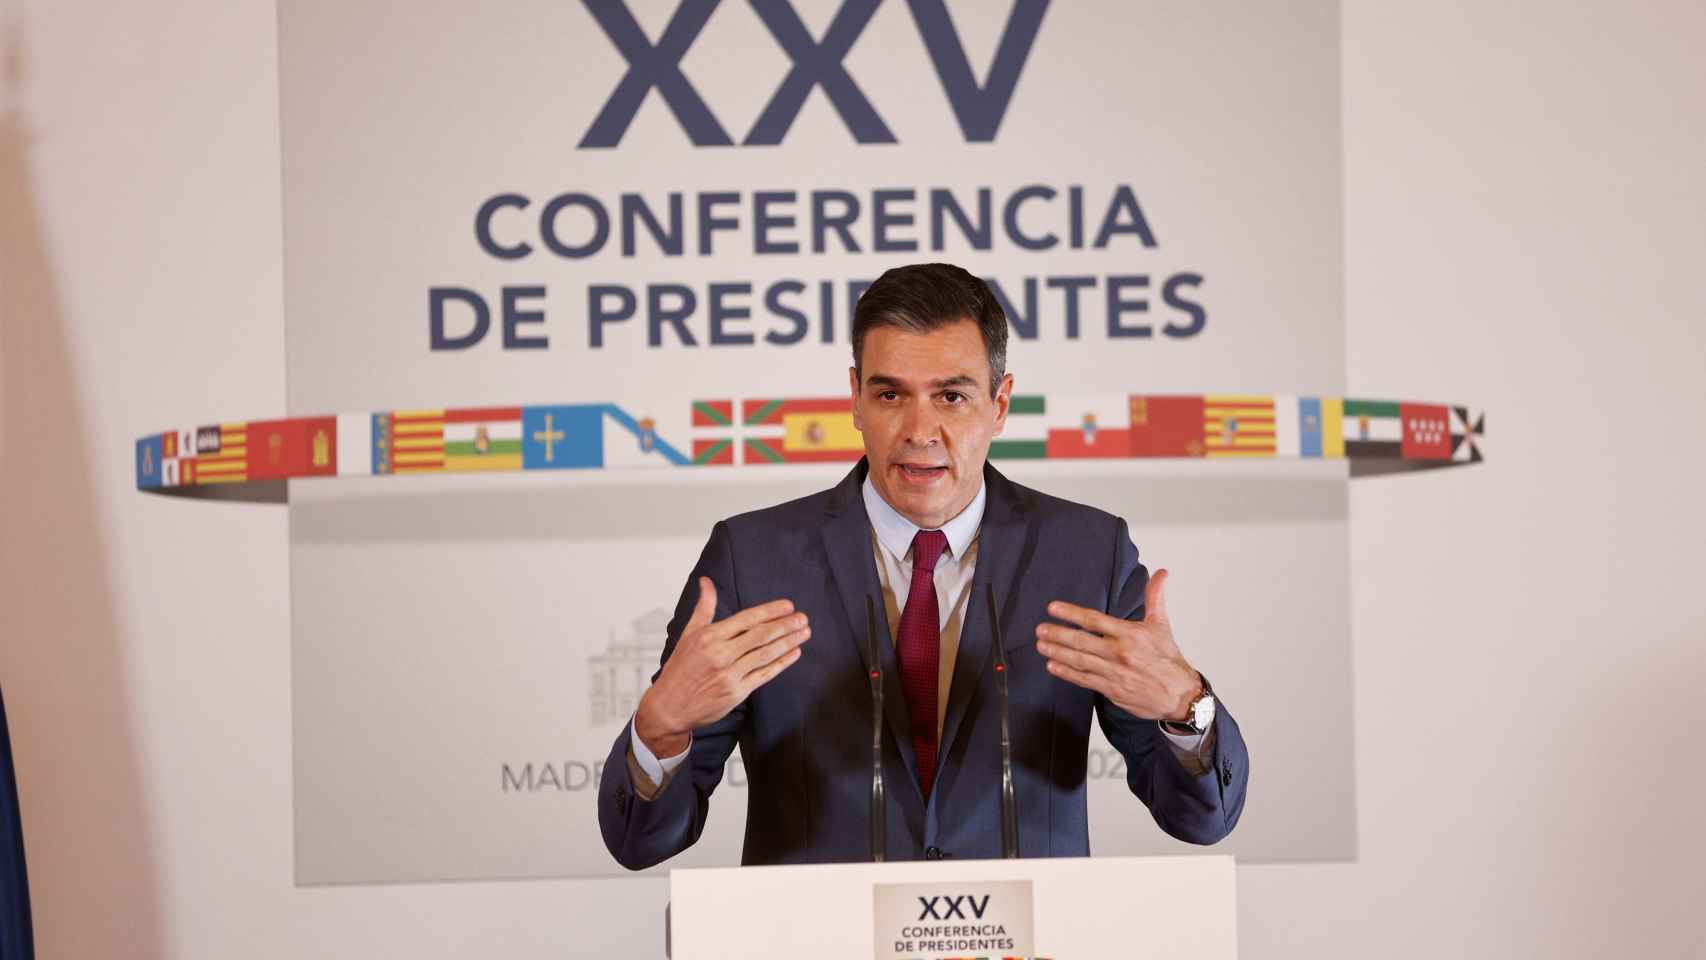 Pedro Sánchez en rueda de prensa tras la reunión telemática de la XXV Conferencia de presidentes autonómicos.